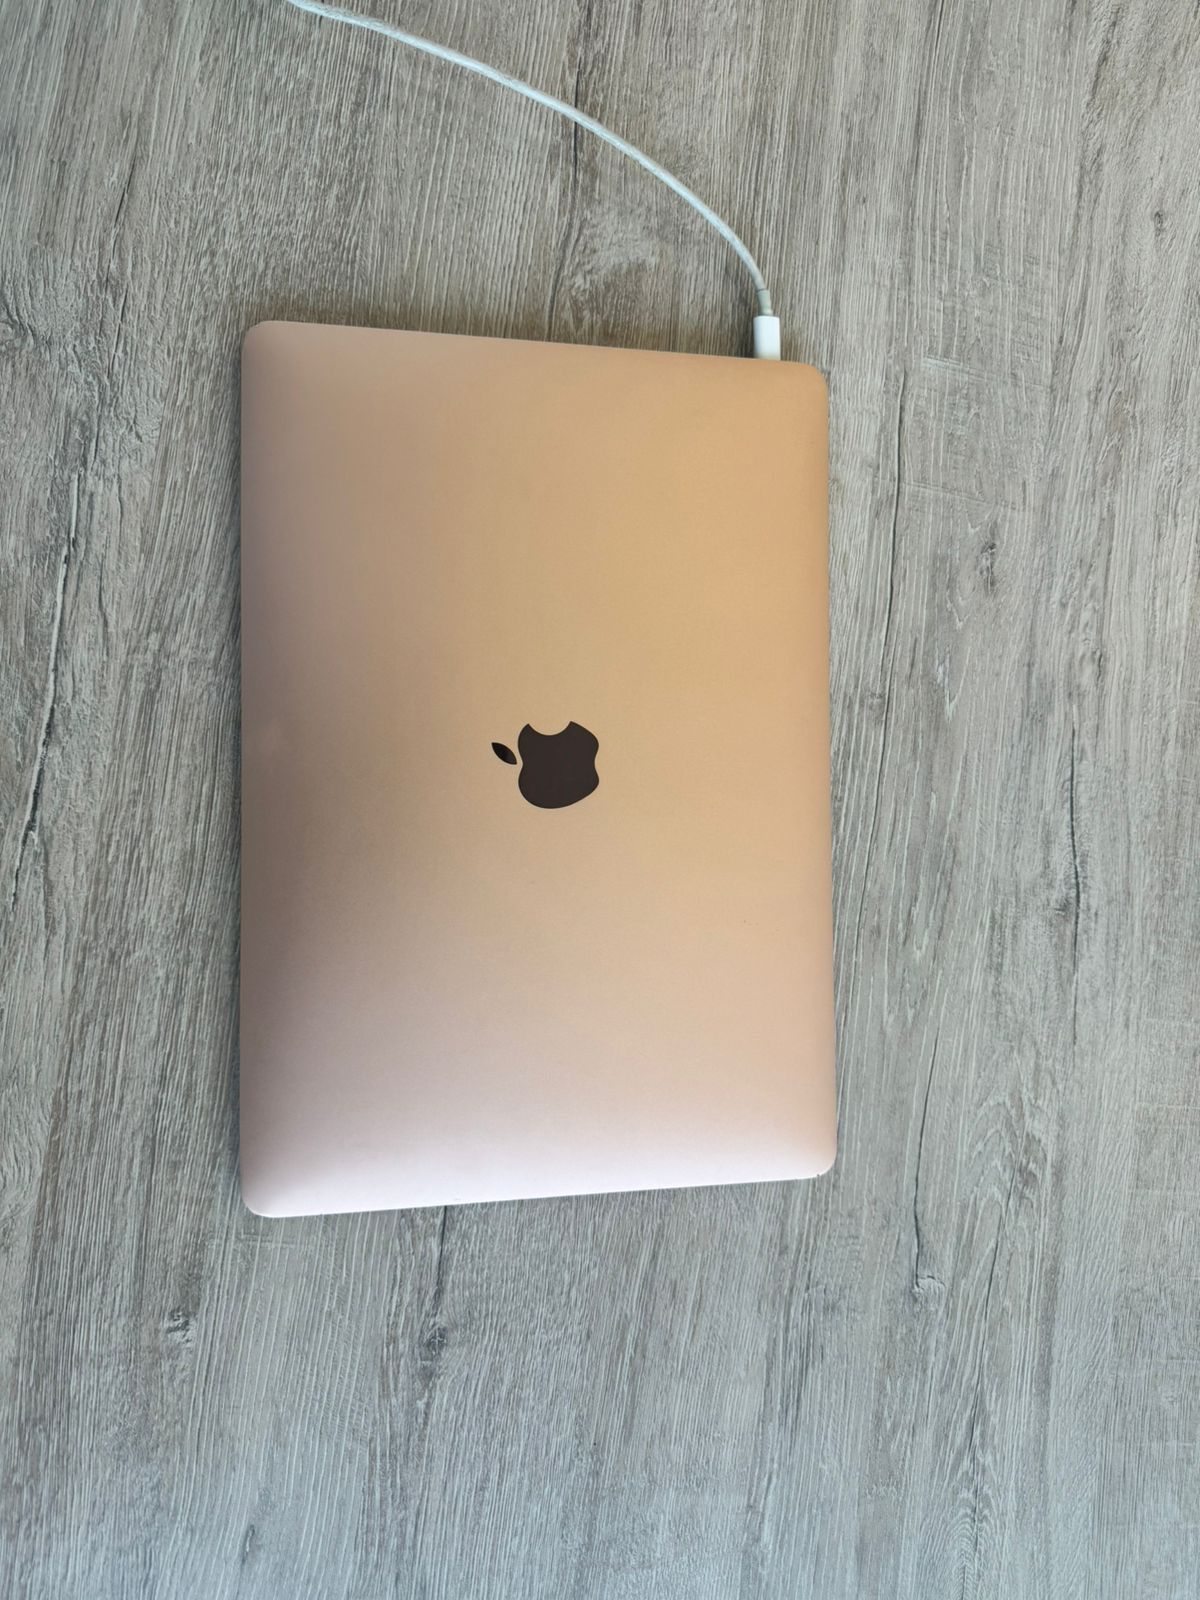 2019 MacBook Air (Rose Gold)